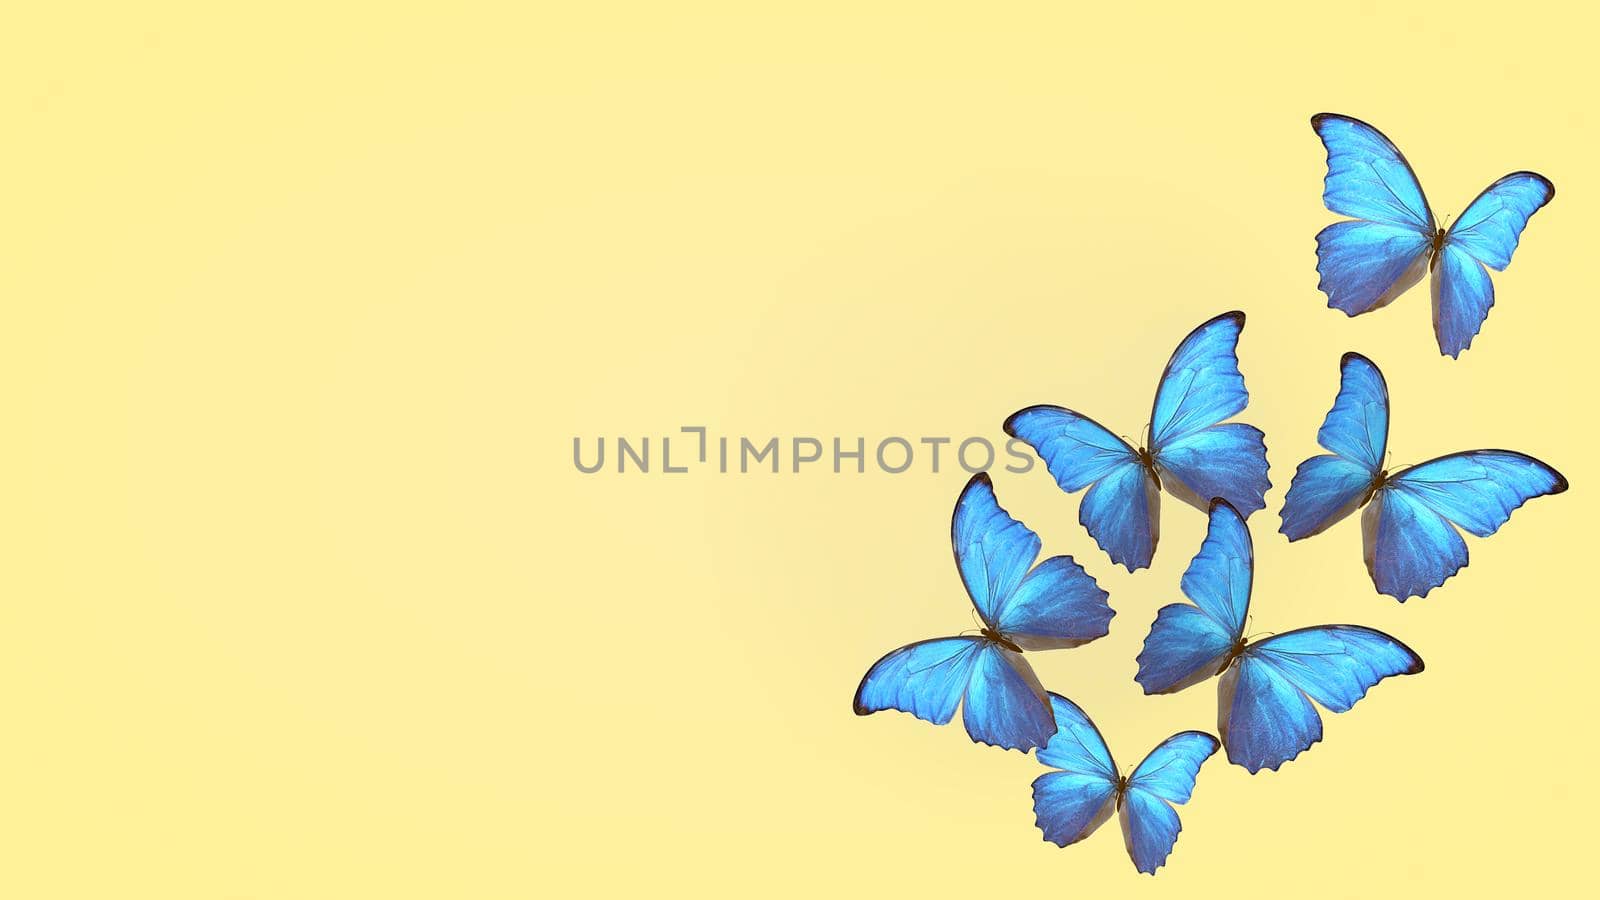 flight of summer blue butterflies. butterfly on a light background. 3d rendering.